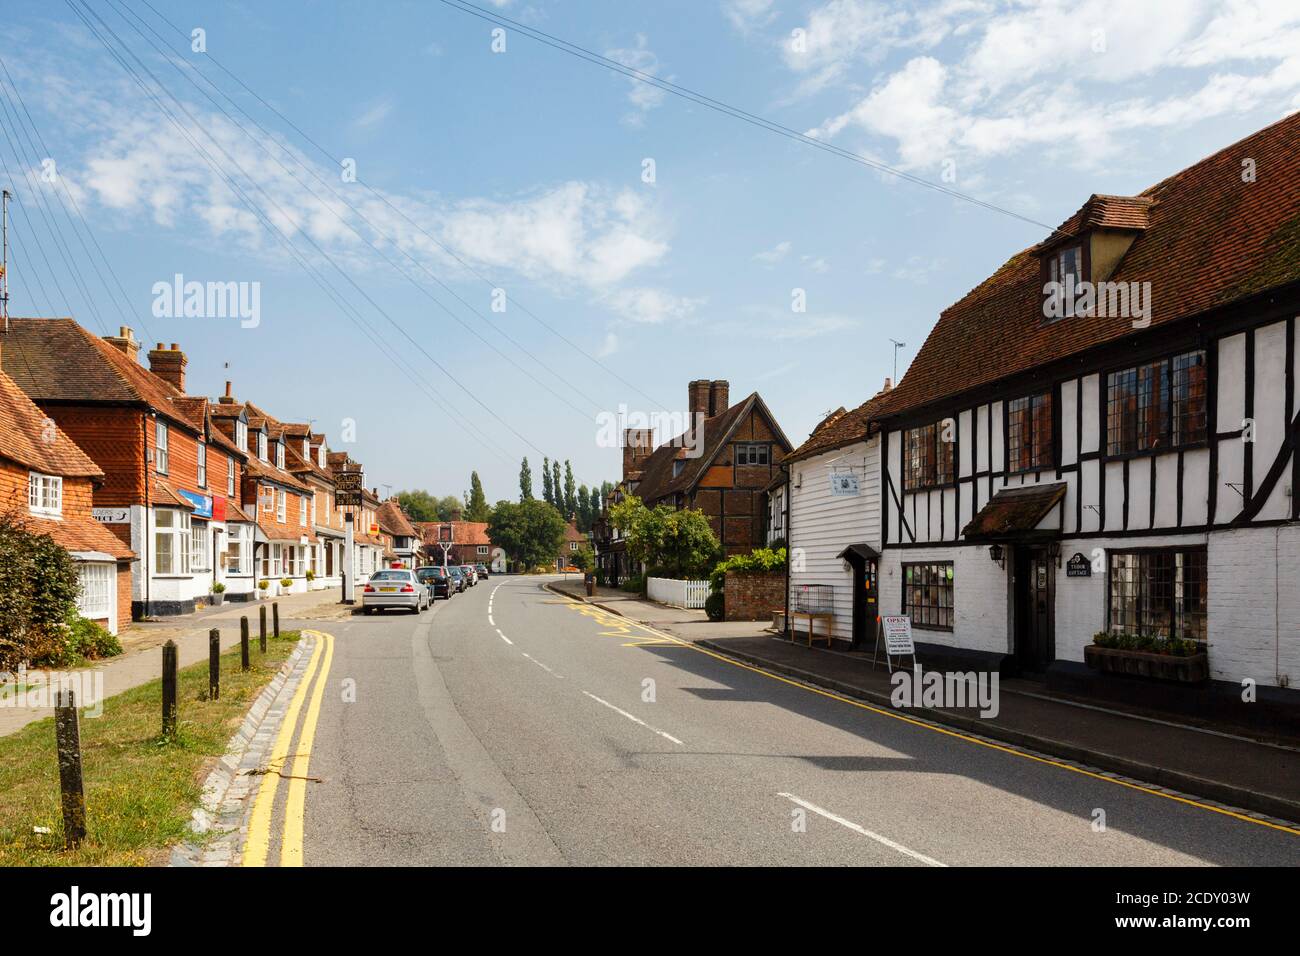 Vue le long de la rue principale bordée de vieux bâtiments typiques de Kentish à Biddenden, Kent, Angleterre, Royaume-Uni, Grande-Bretagne Banque D'Images